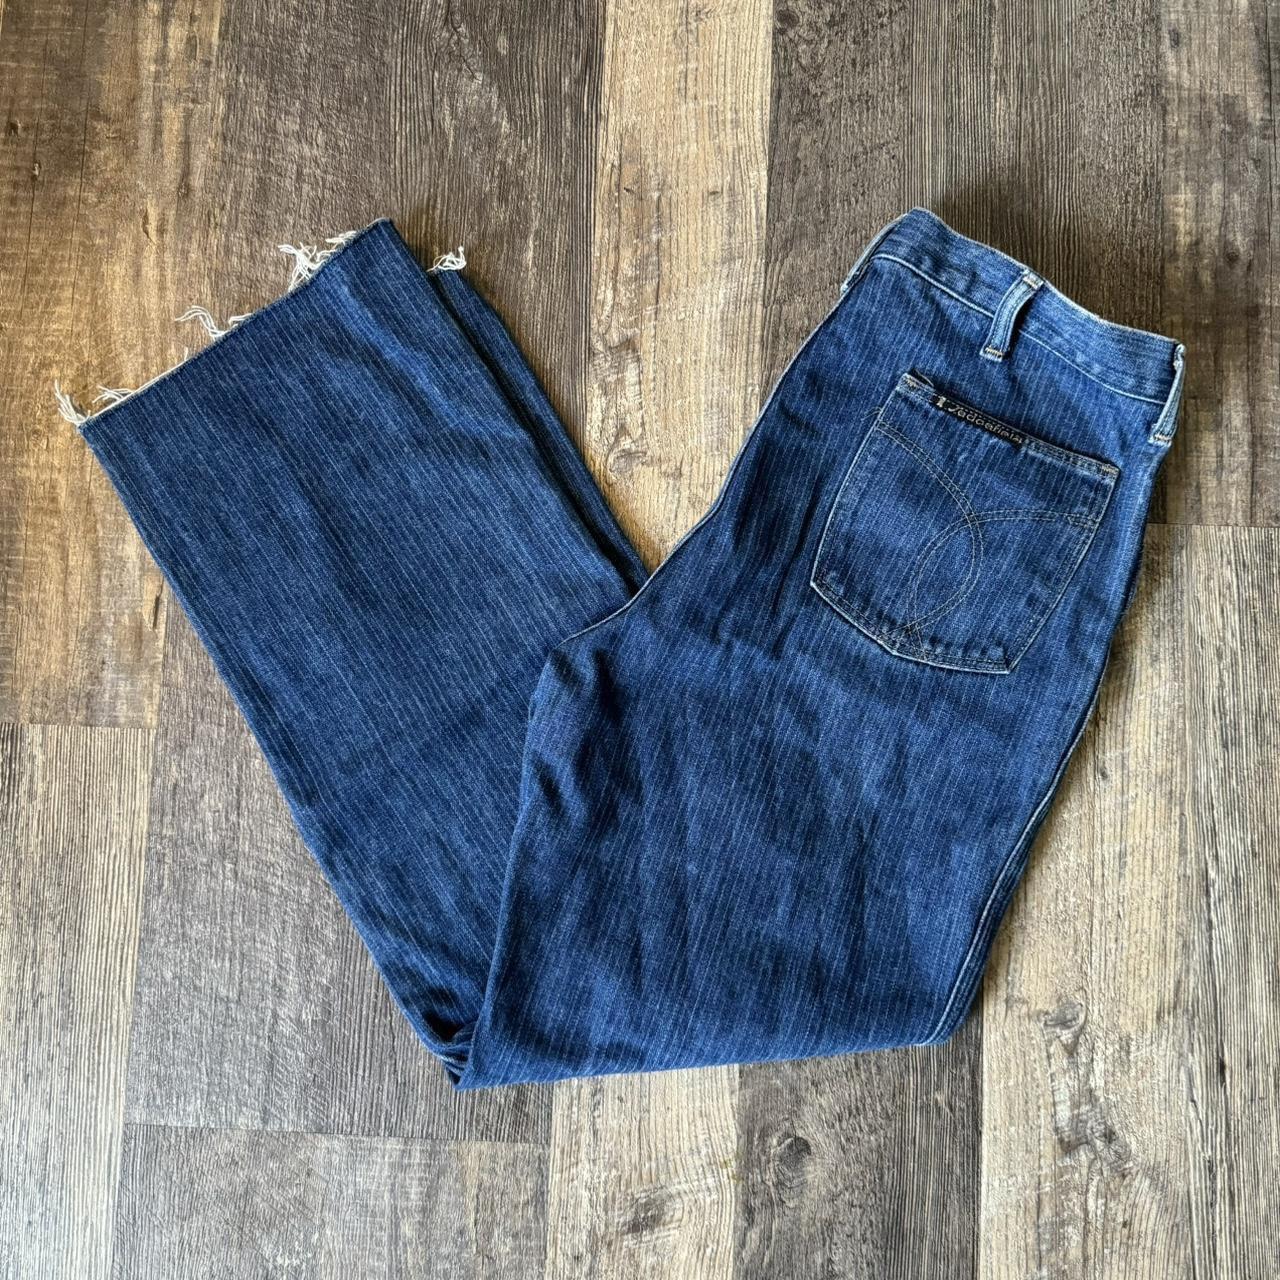 Vintage Ledgefield Cropped Pinstripe Jeans Super... - Depop